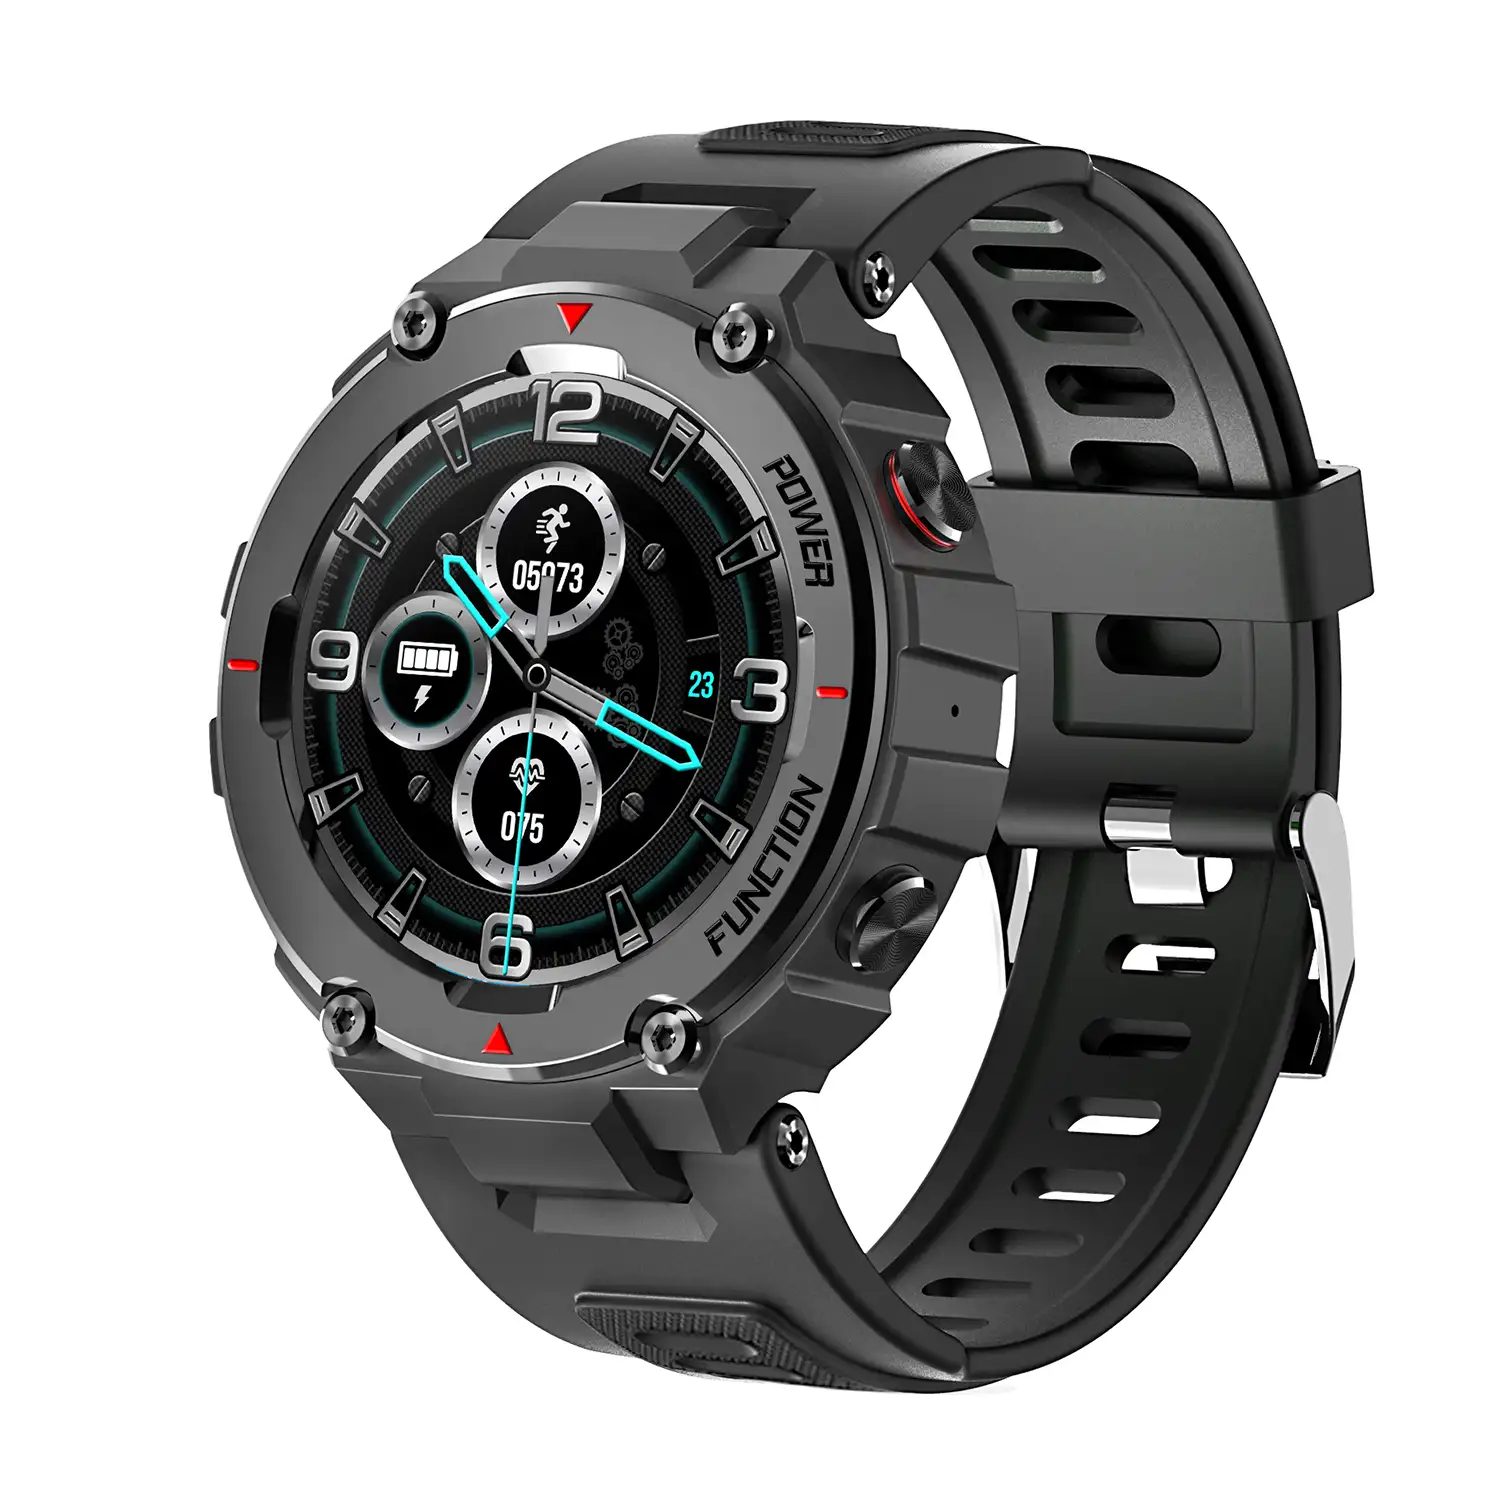 Smartwatch F26 outdoor. Sumergible 30 m, resistencia a temperaturas extremas. Reproductor musical y memoria interna, 10 modos deportivos.